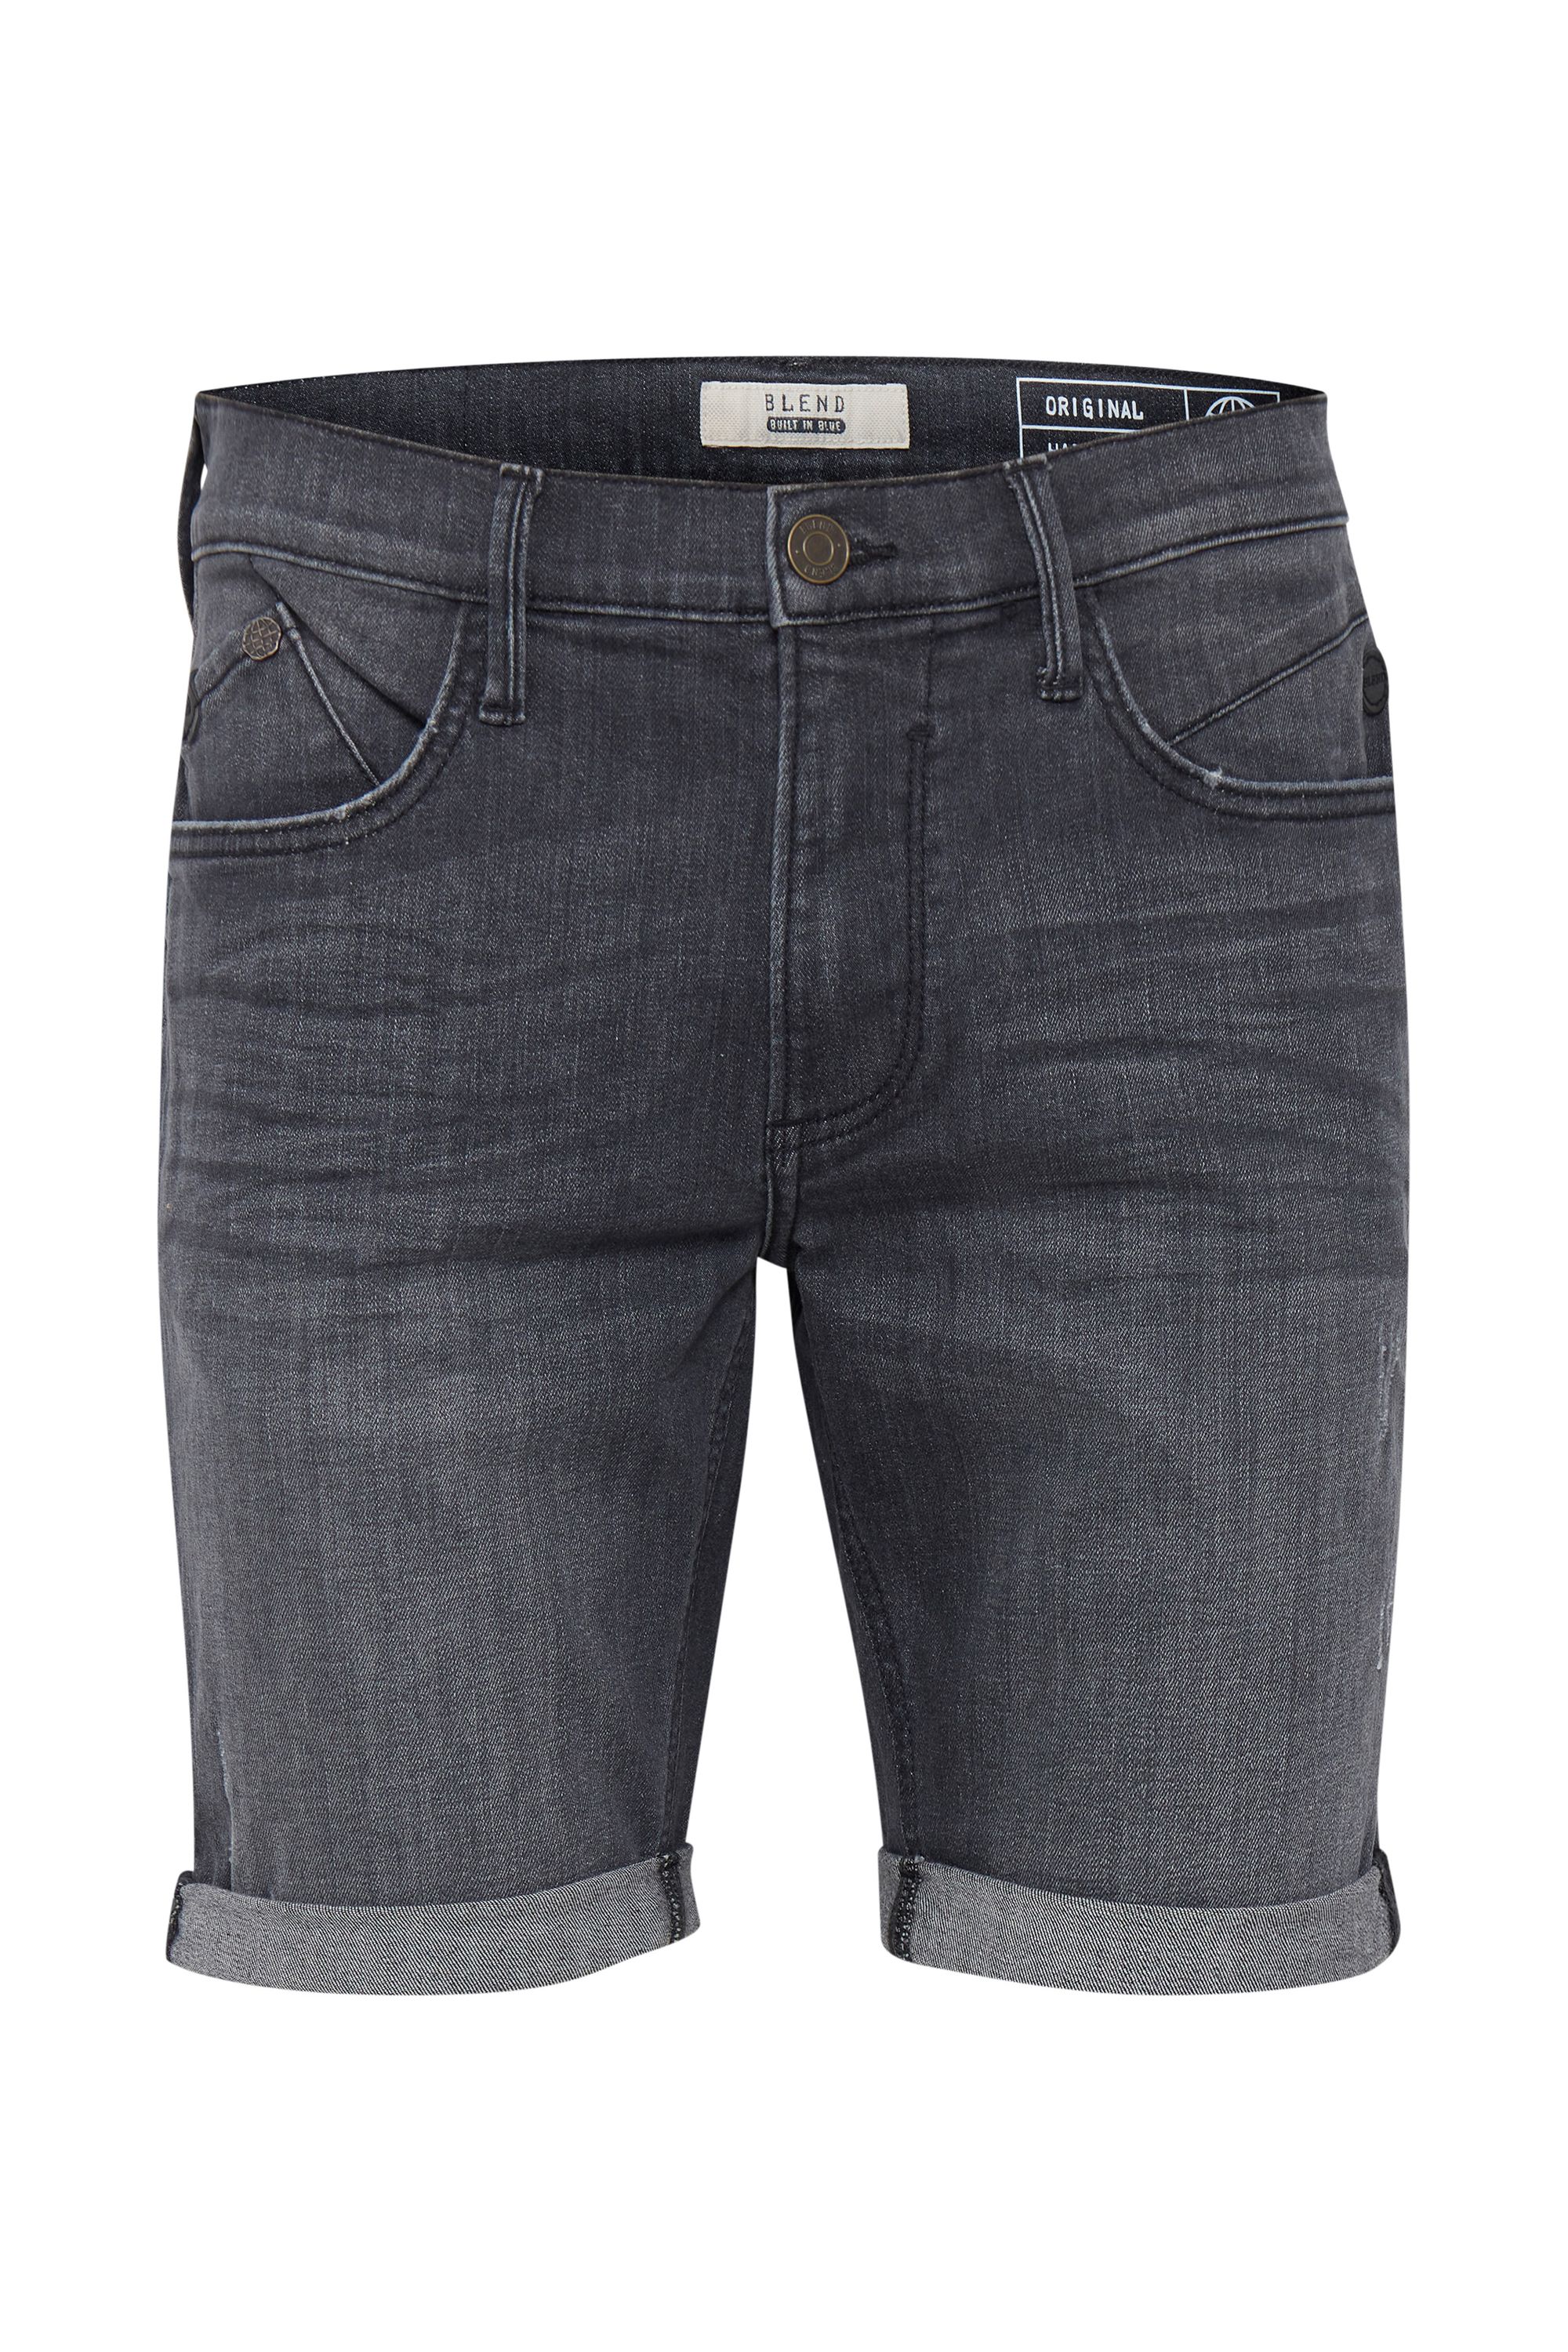 Тканевые шорты BLEND Jeans BHGrilitsch, серый